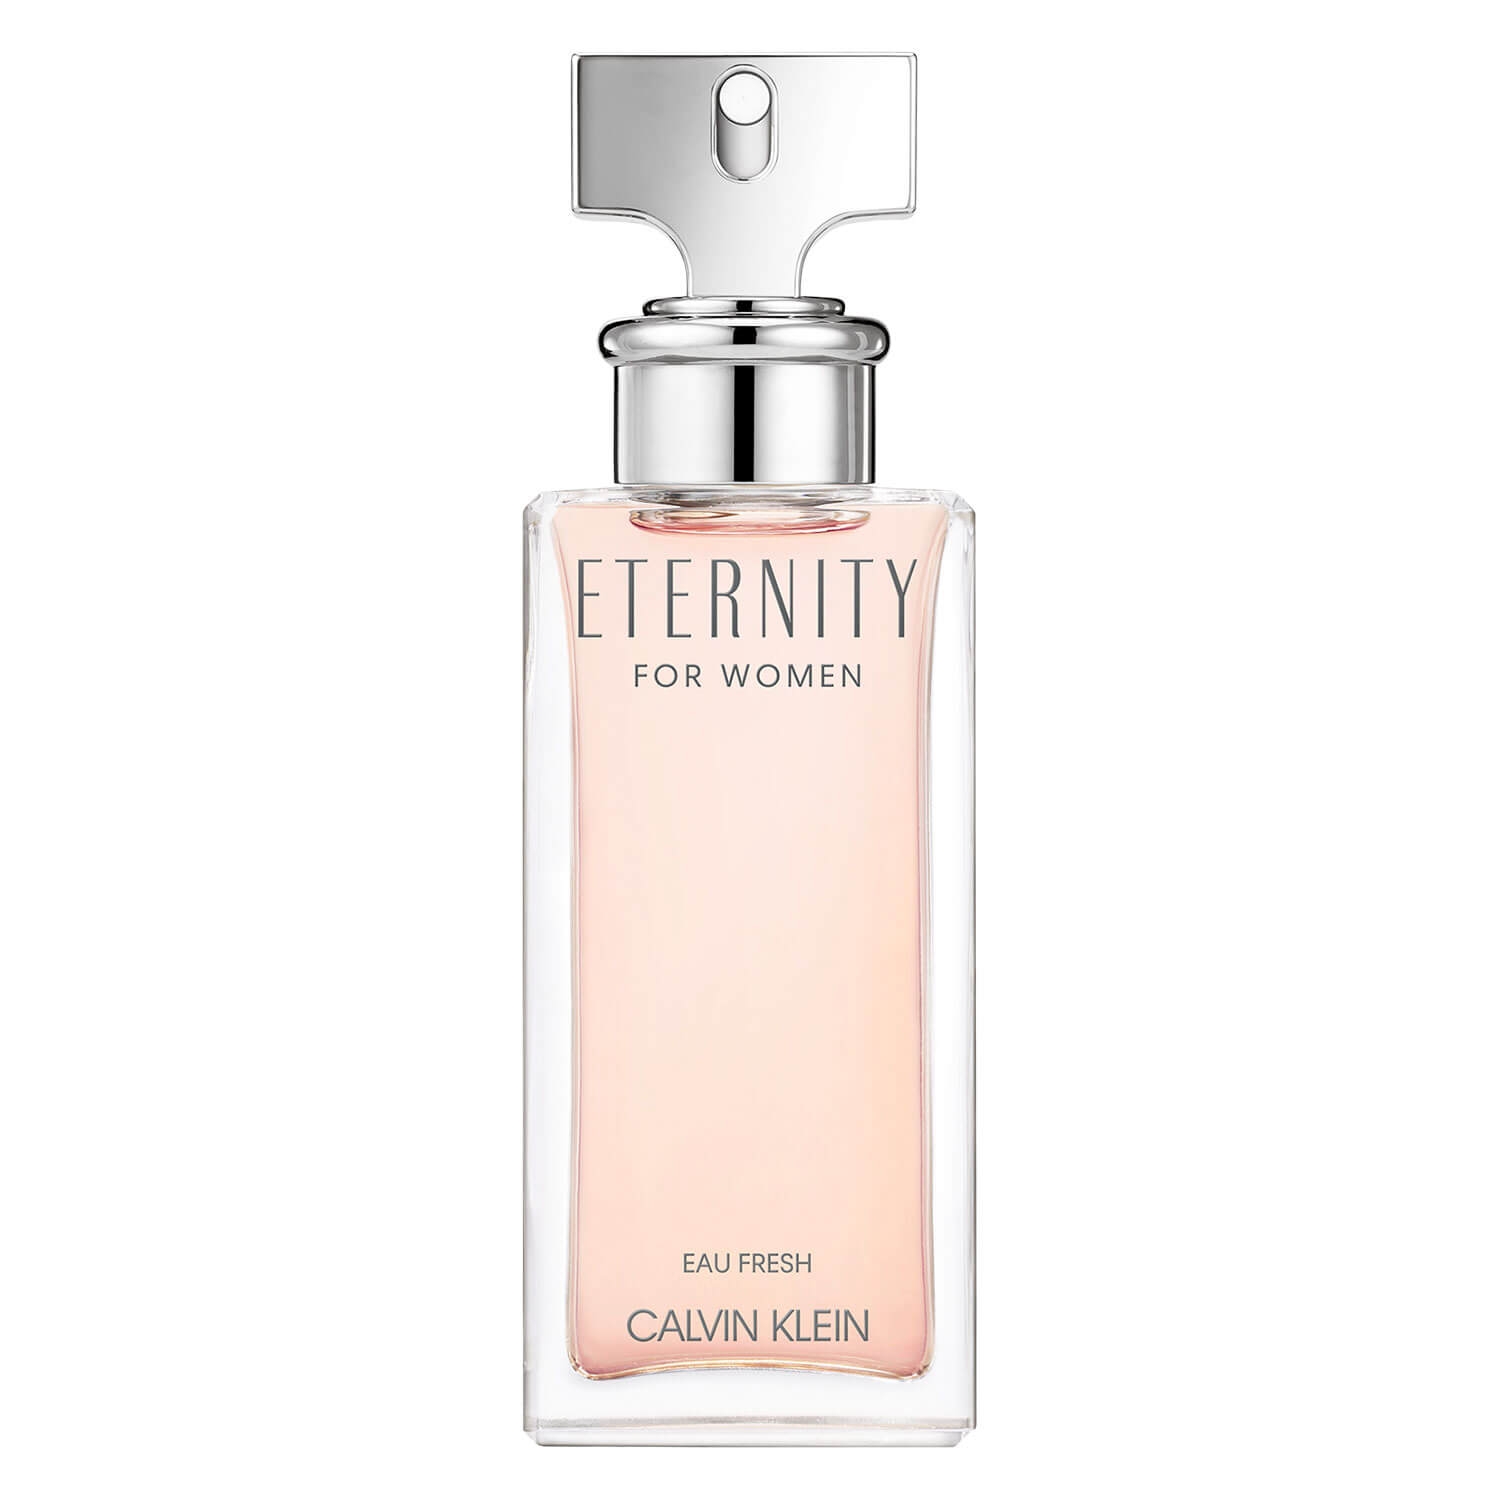 Produktbild von Eternity - For Women Eau Fresh Eau de Parfum